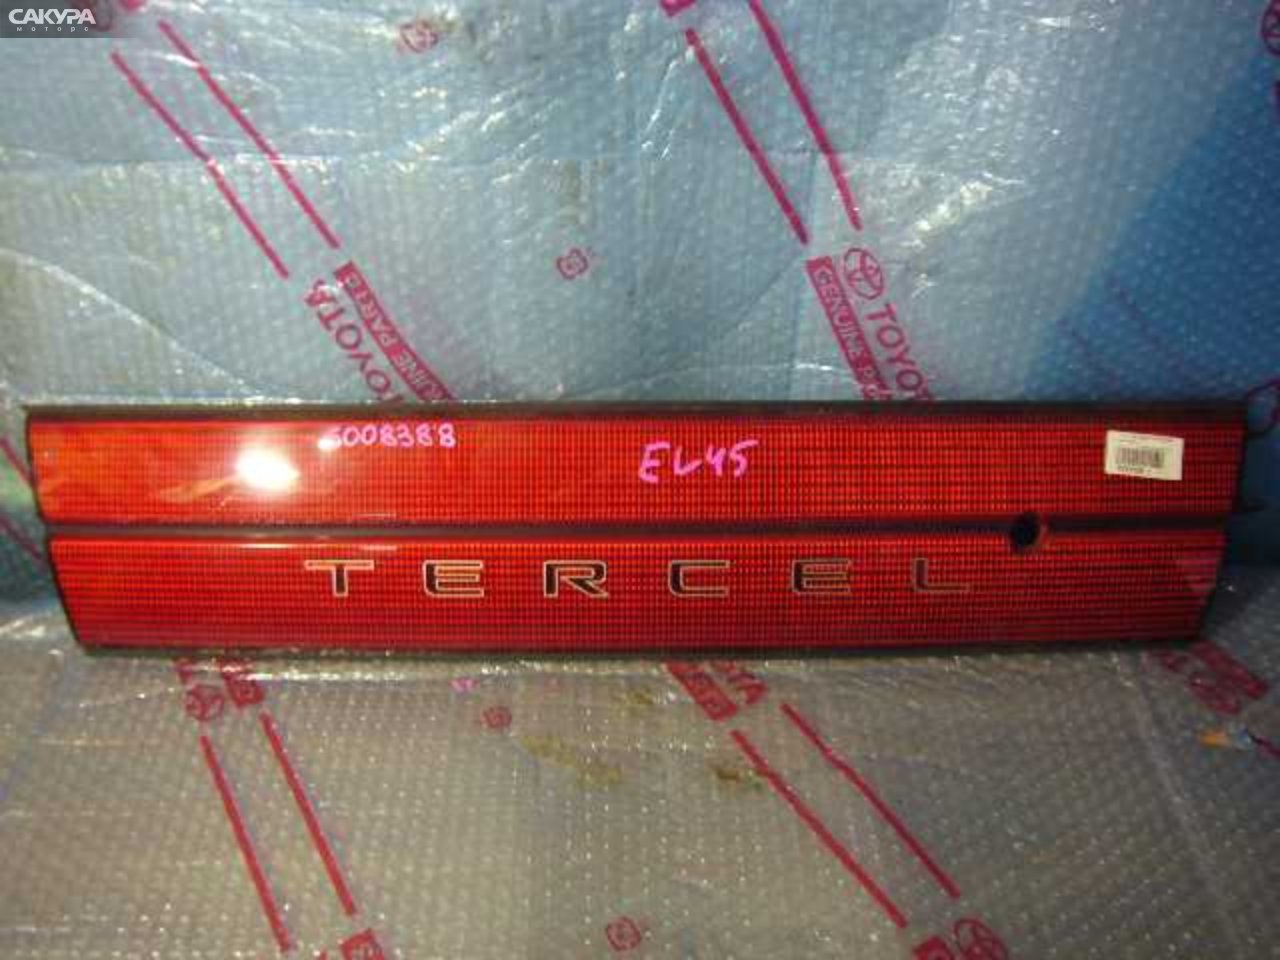 Фонарь вставка багажника Toyota Tercel EL45: купить в Сакура Кемерово.